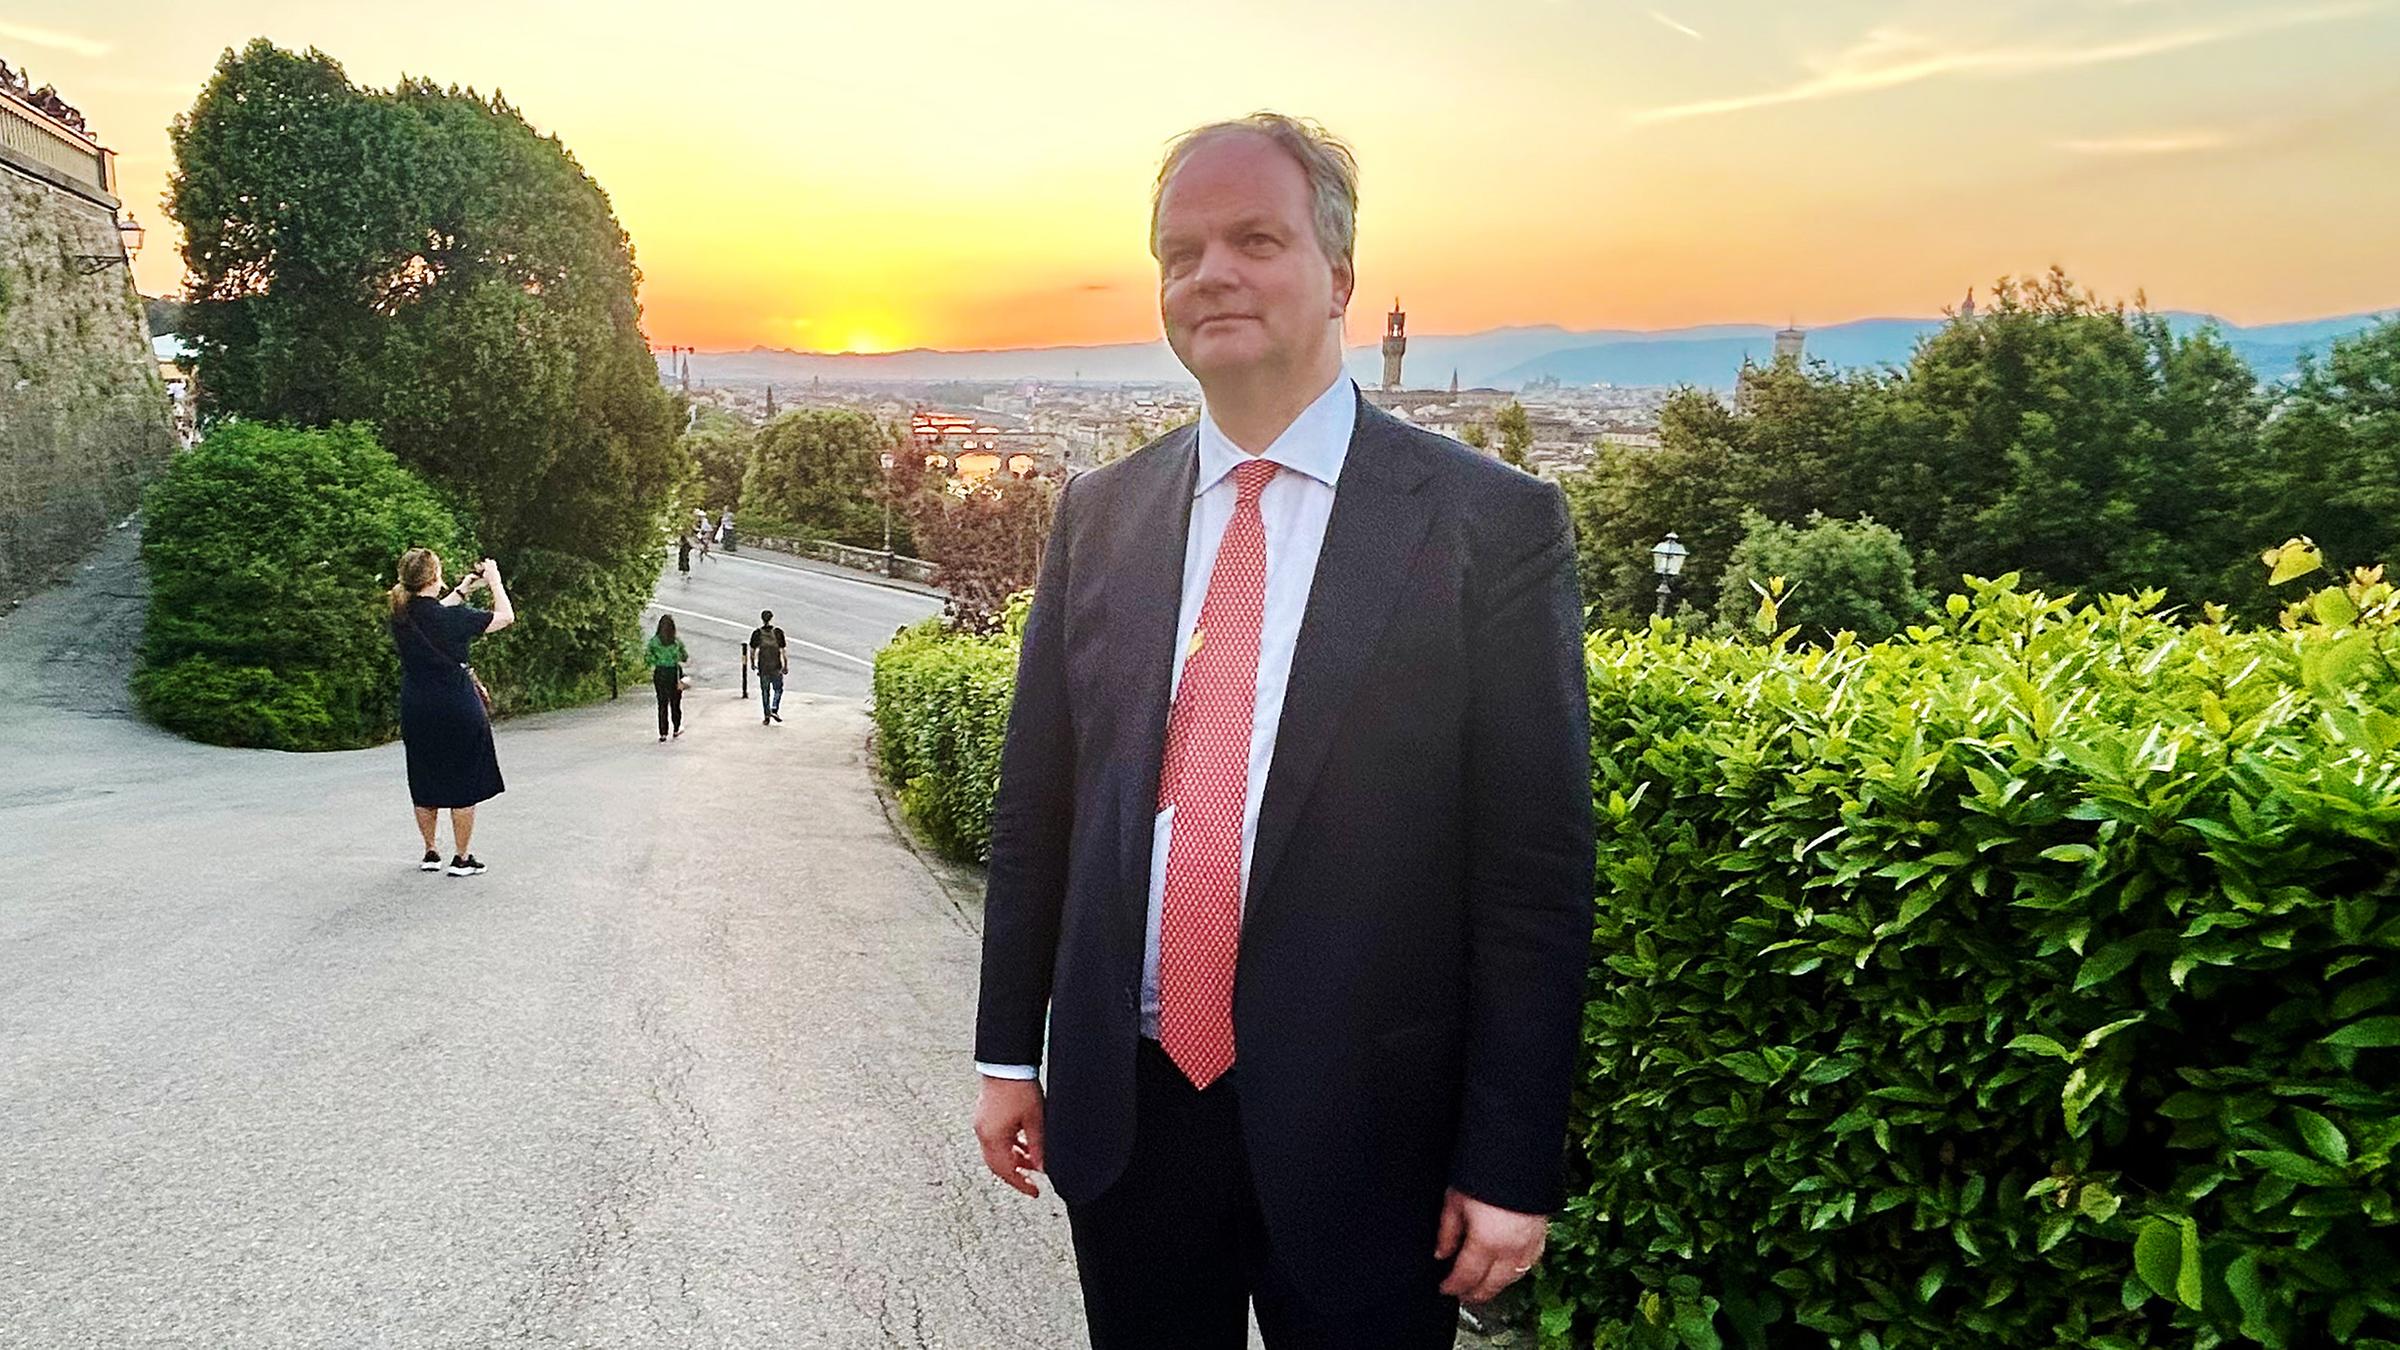 Eike Schmidt, Kandidat um das Amt des Bürgermeisters in Florenz, aufgenommen am 11.05.2024